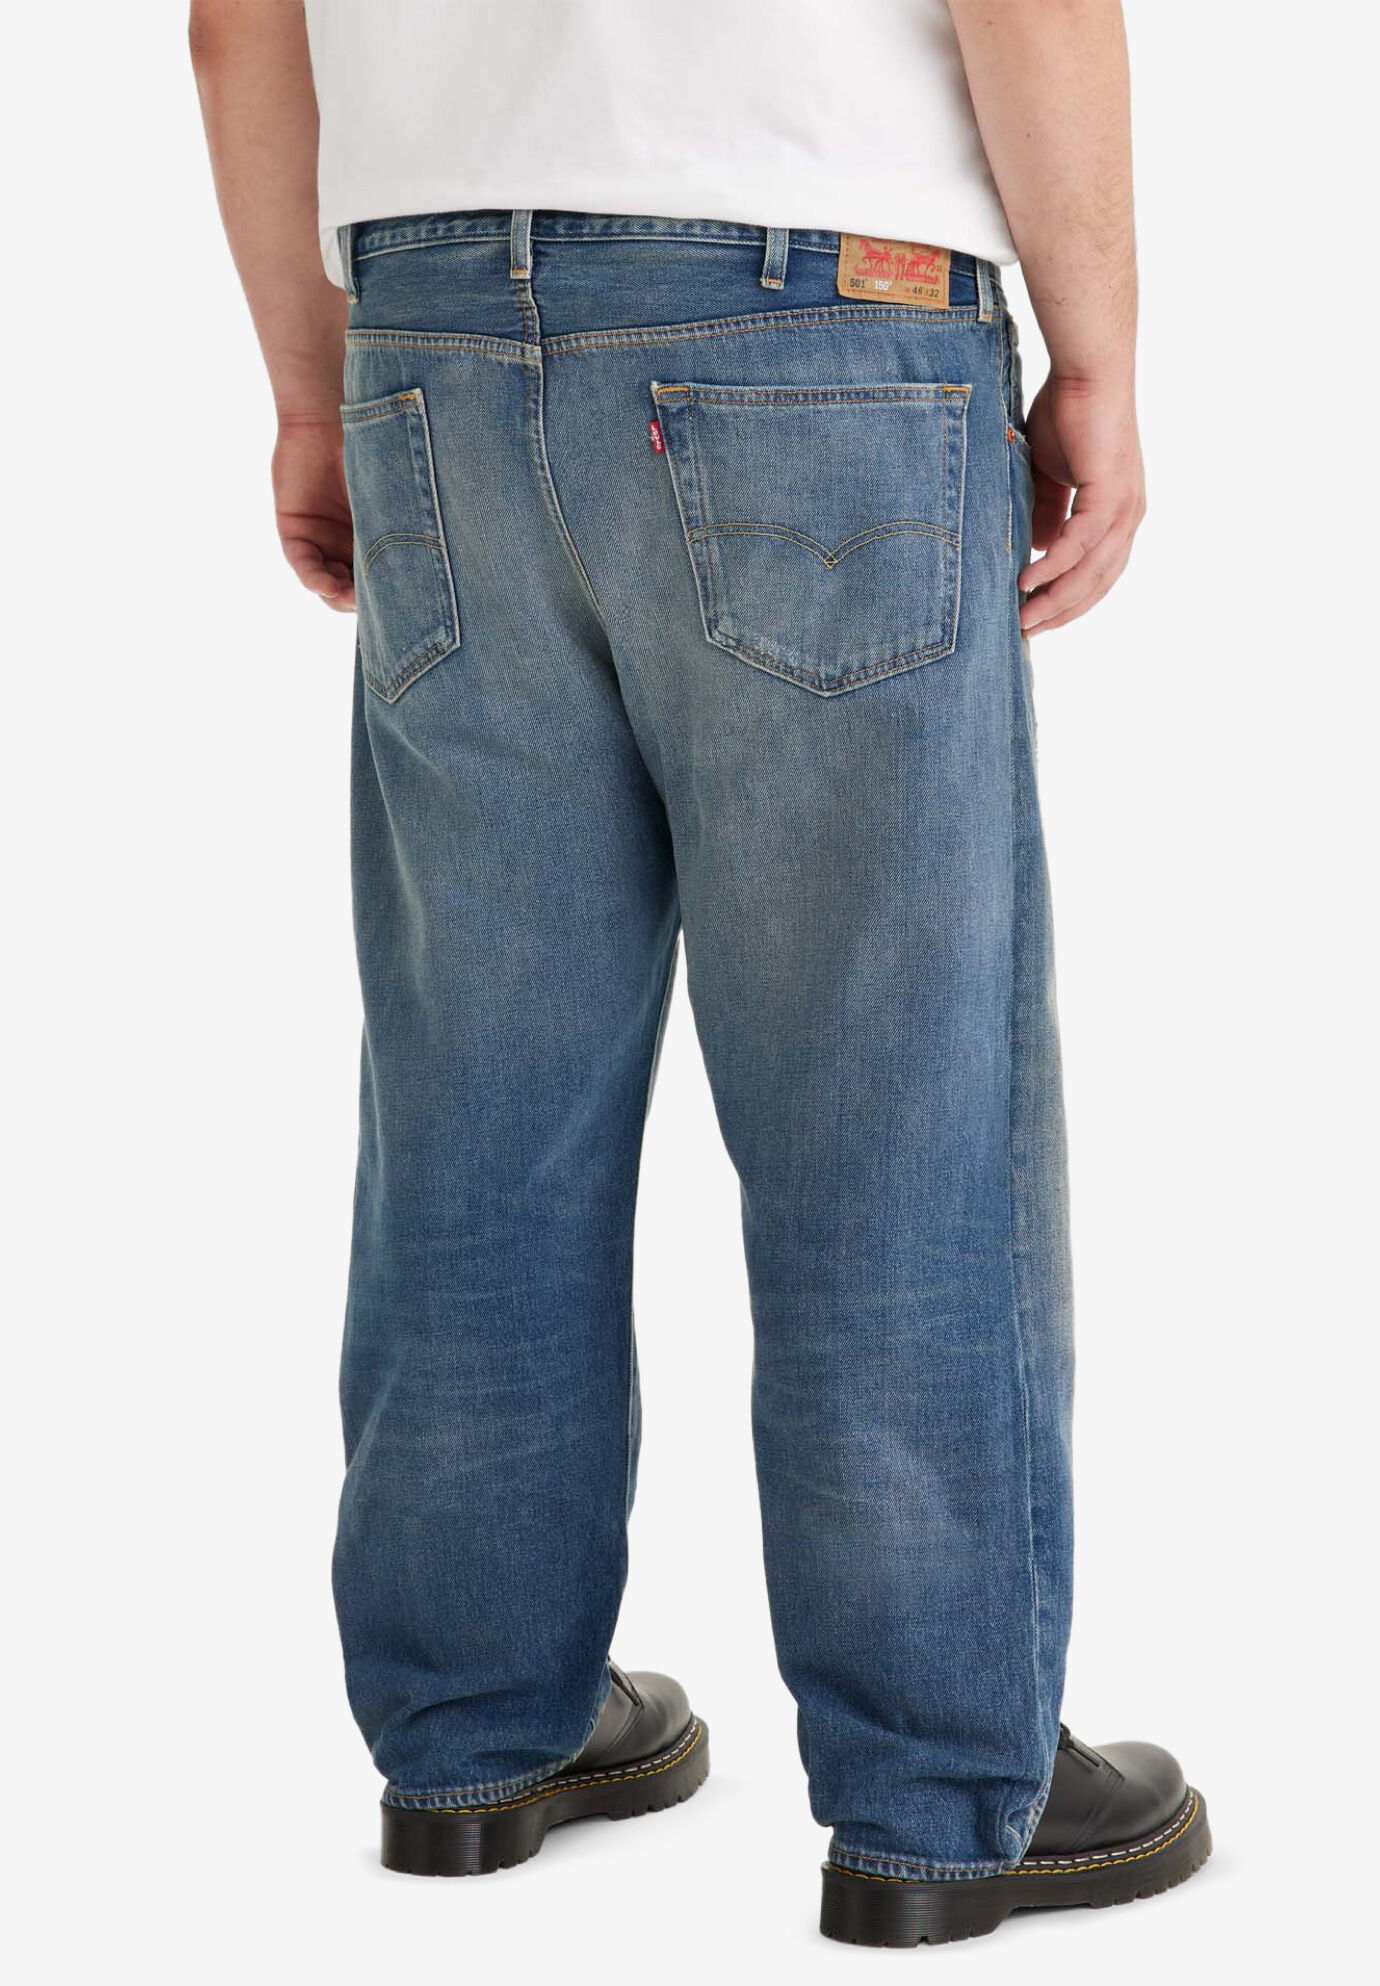 stretch 501 jeans